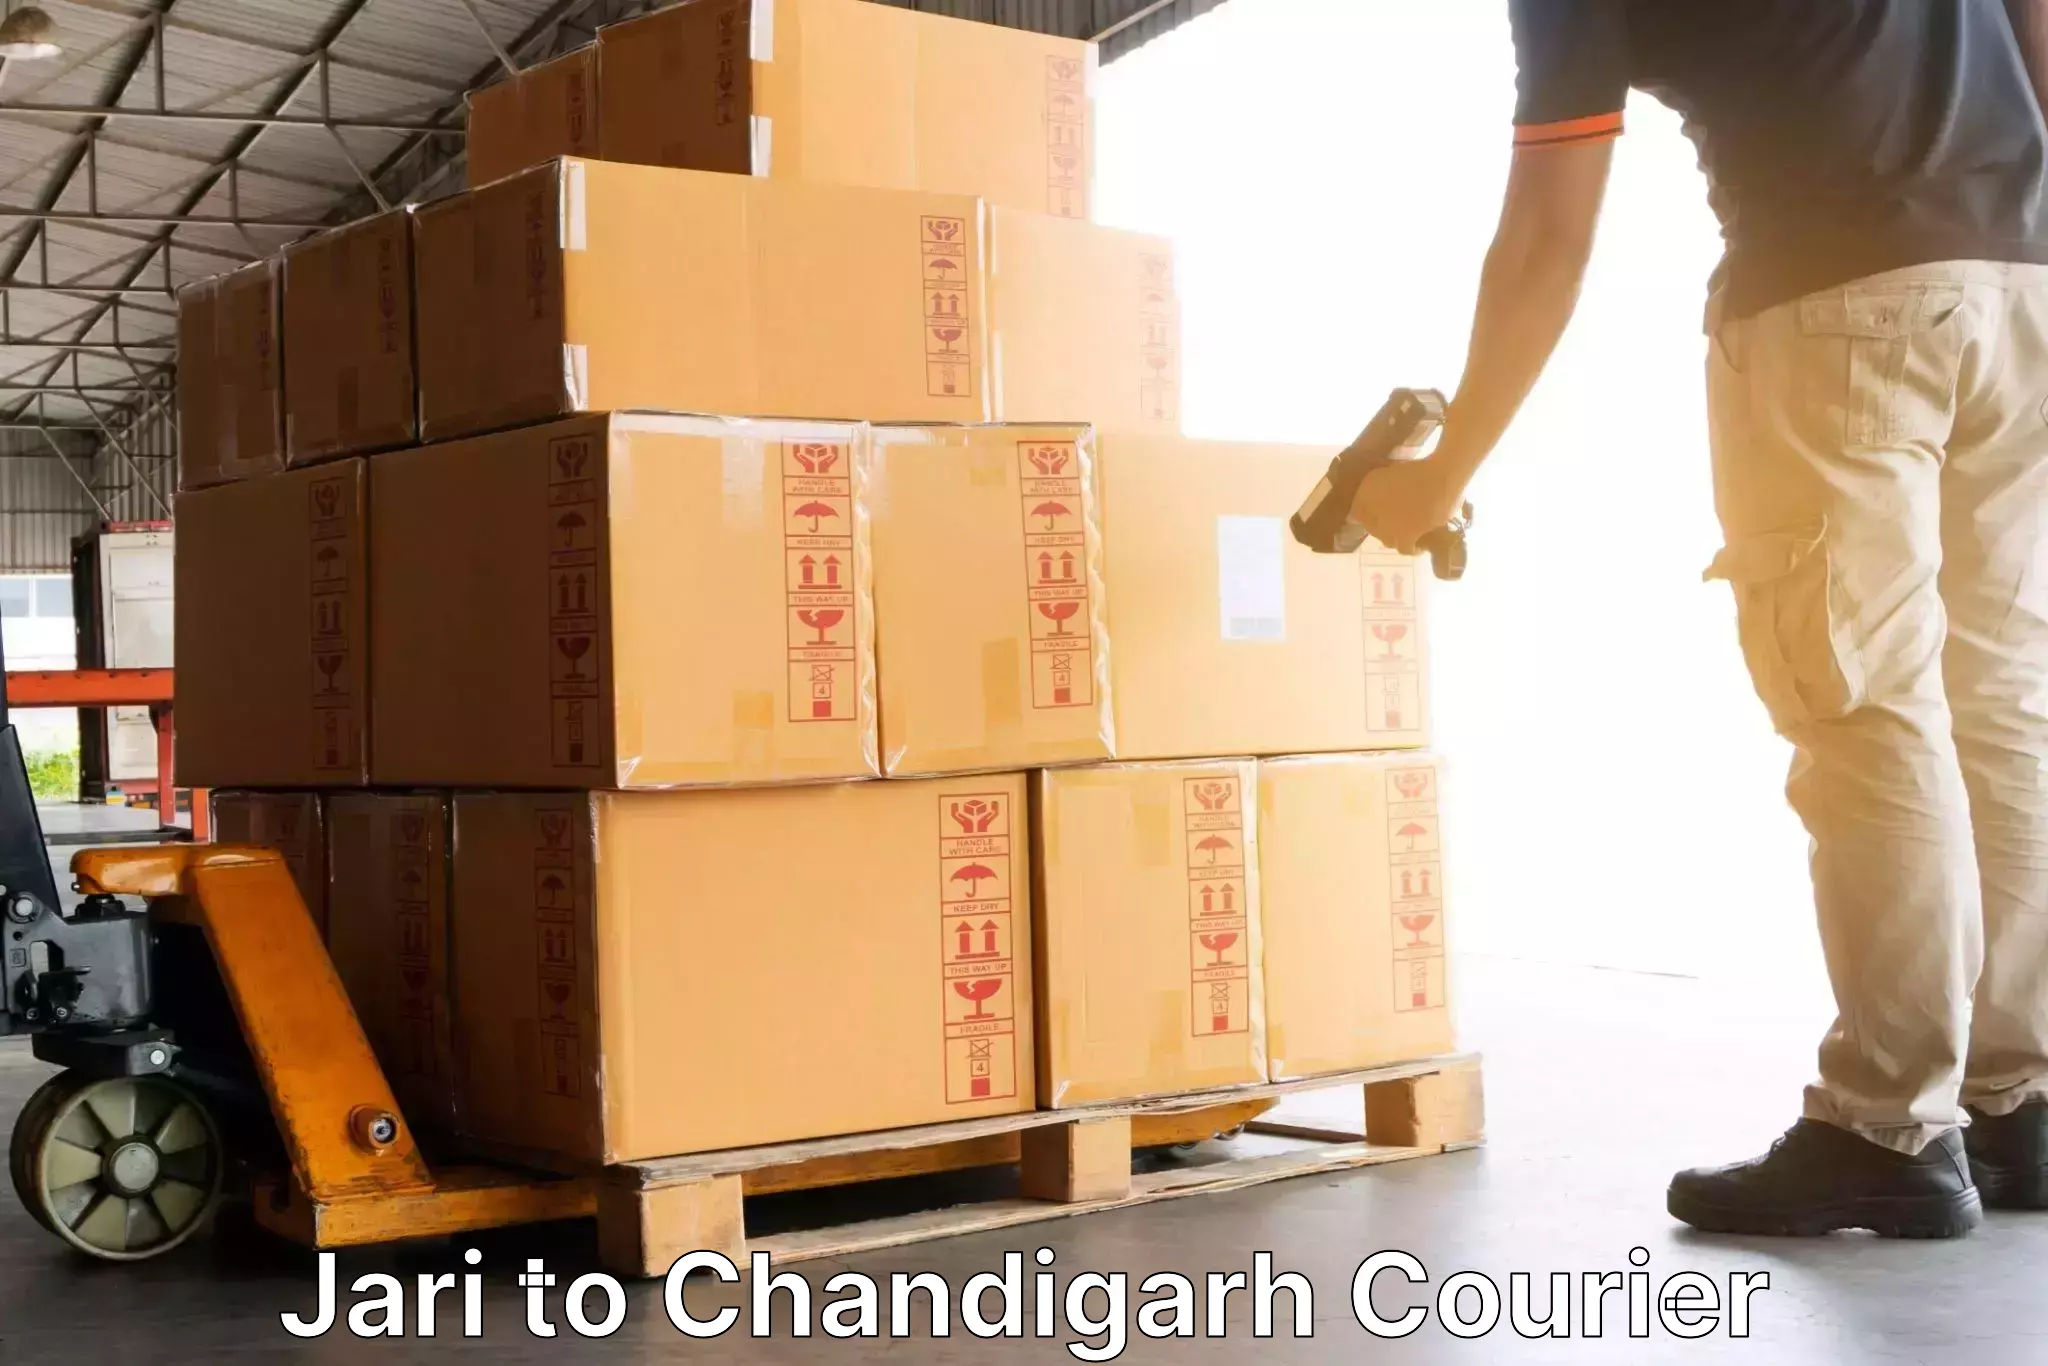 Efficient cargo services Jari to Chandigarh